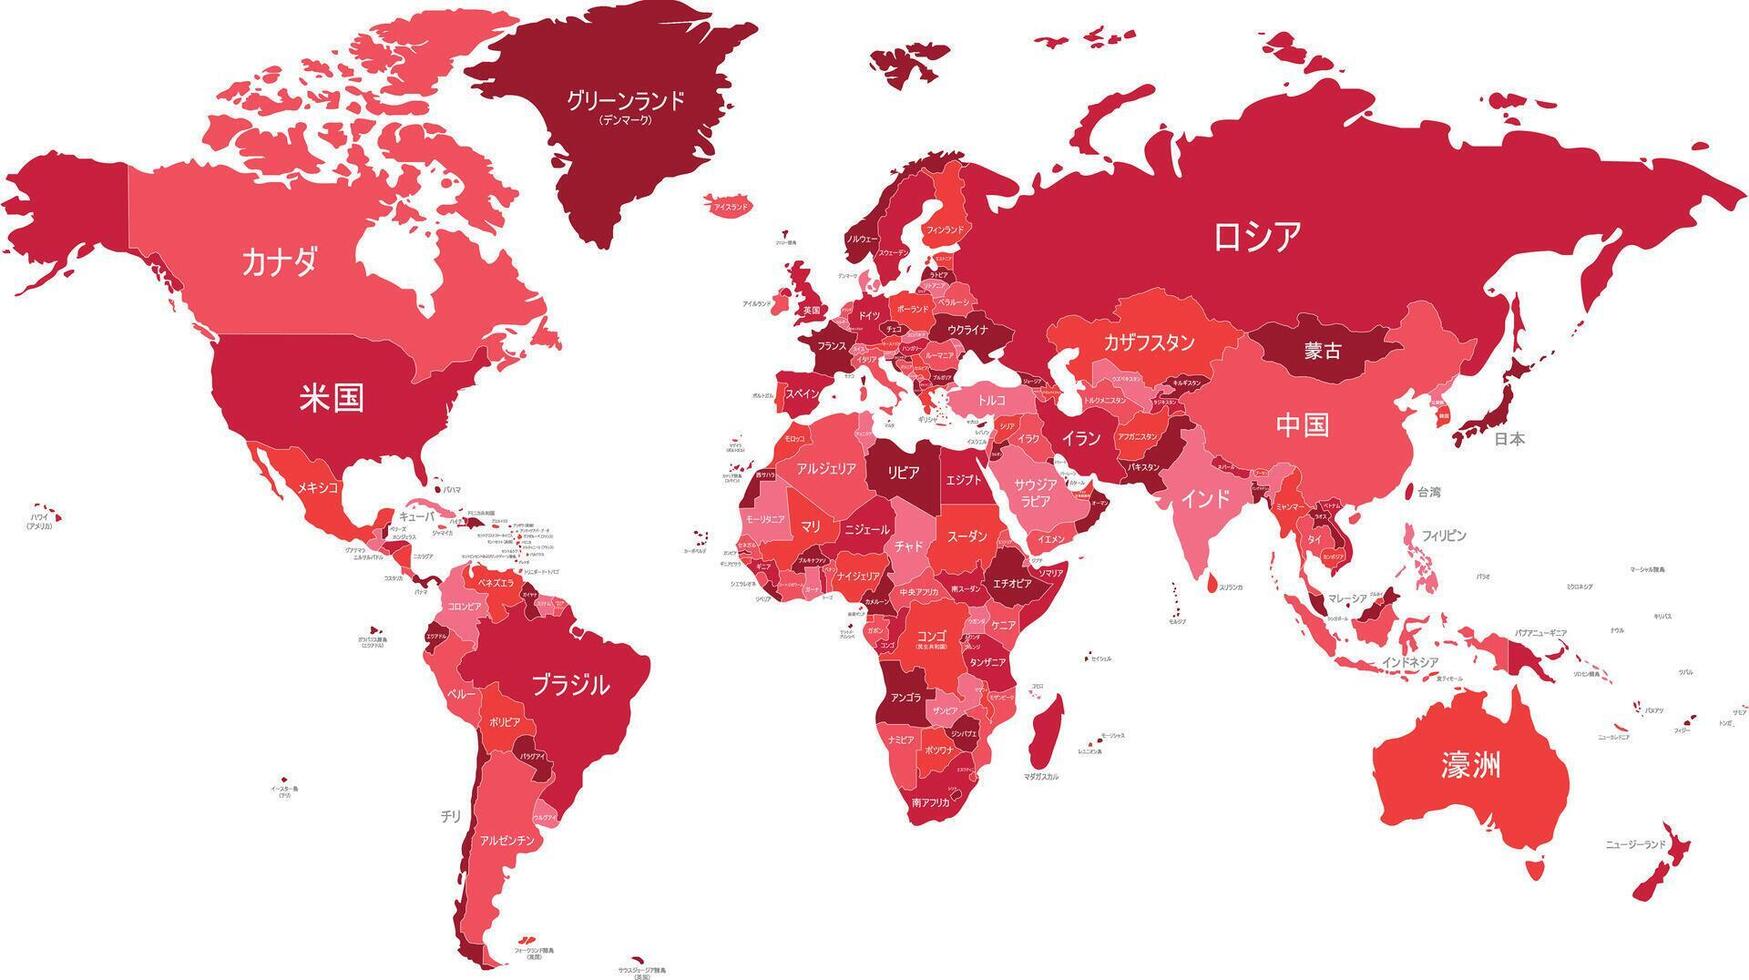 politiek wereld kaart vector illustratie met verschillend tonen van rood voor elk land en land namen in Japans. bewerkbare en duidelijk gelabeld lagen.